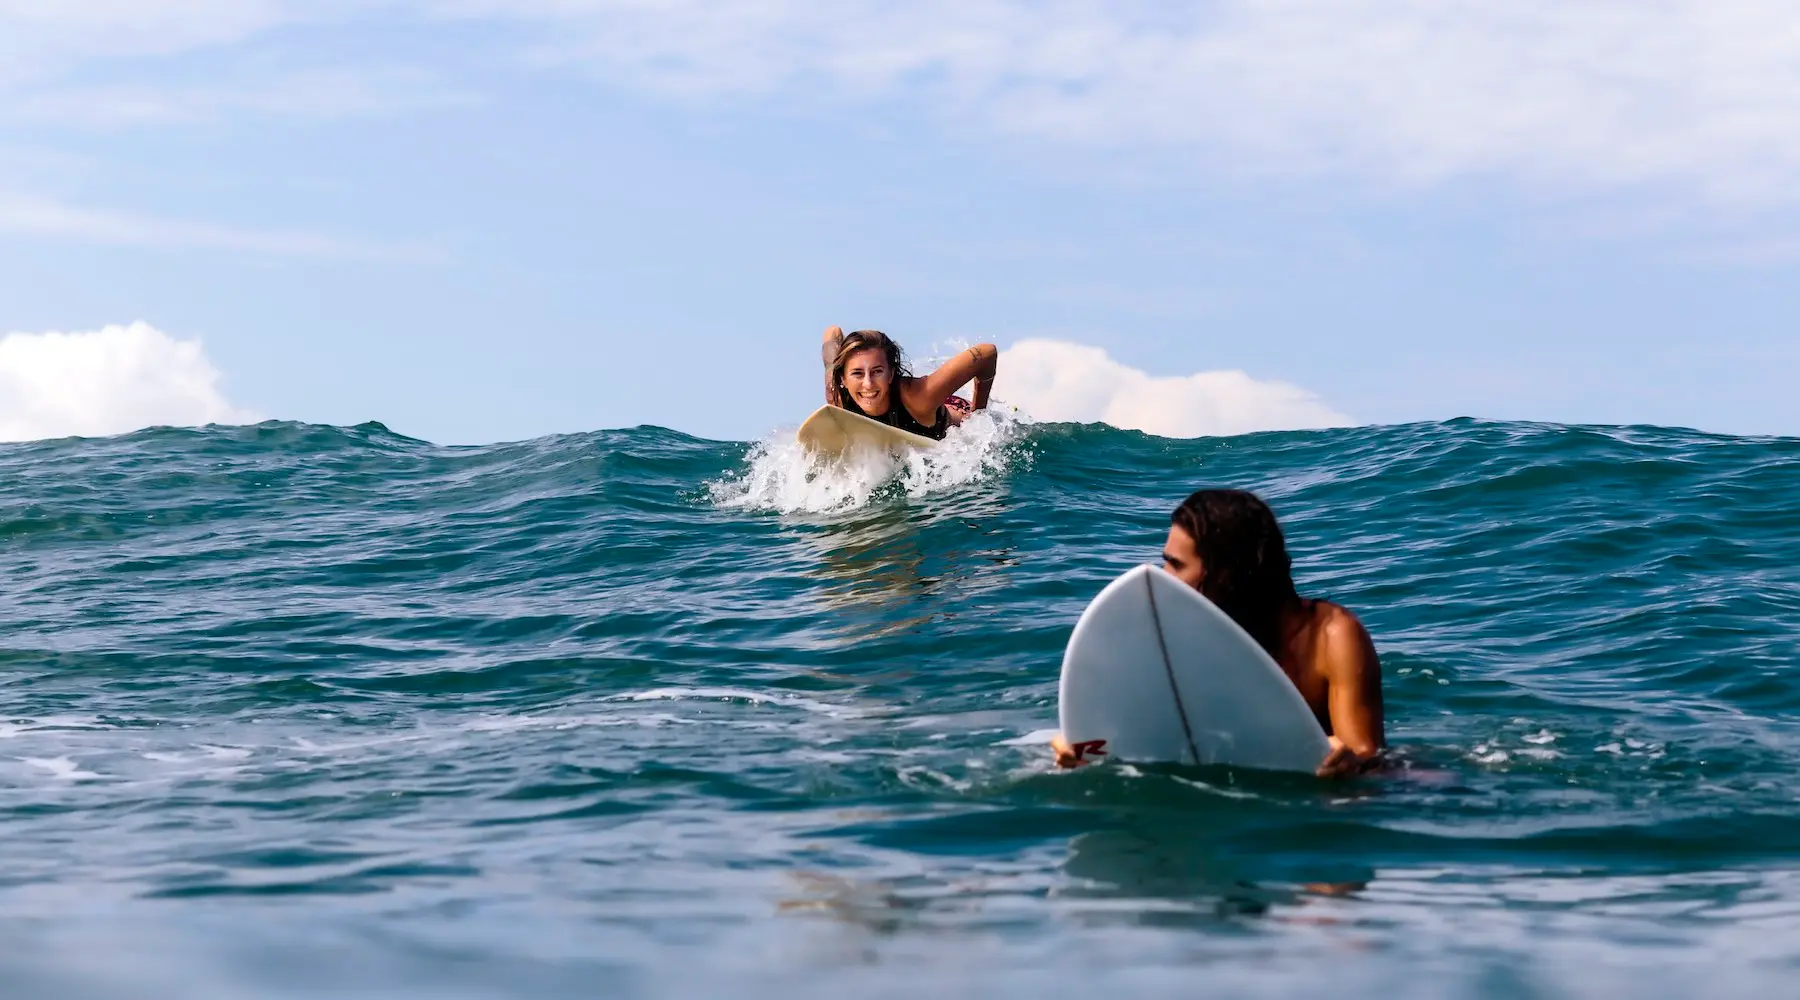 Friends surfing in Bali.